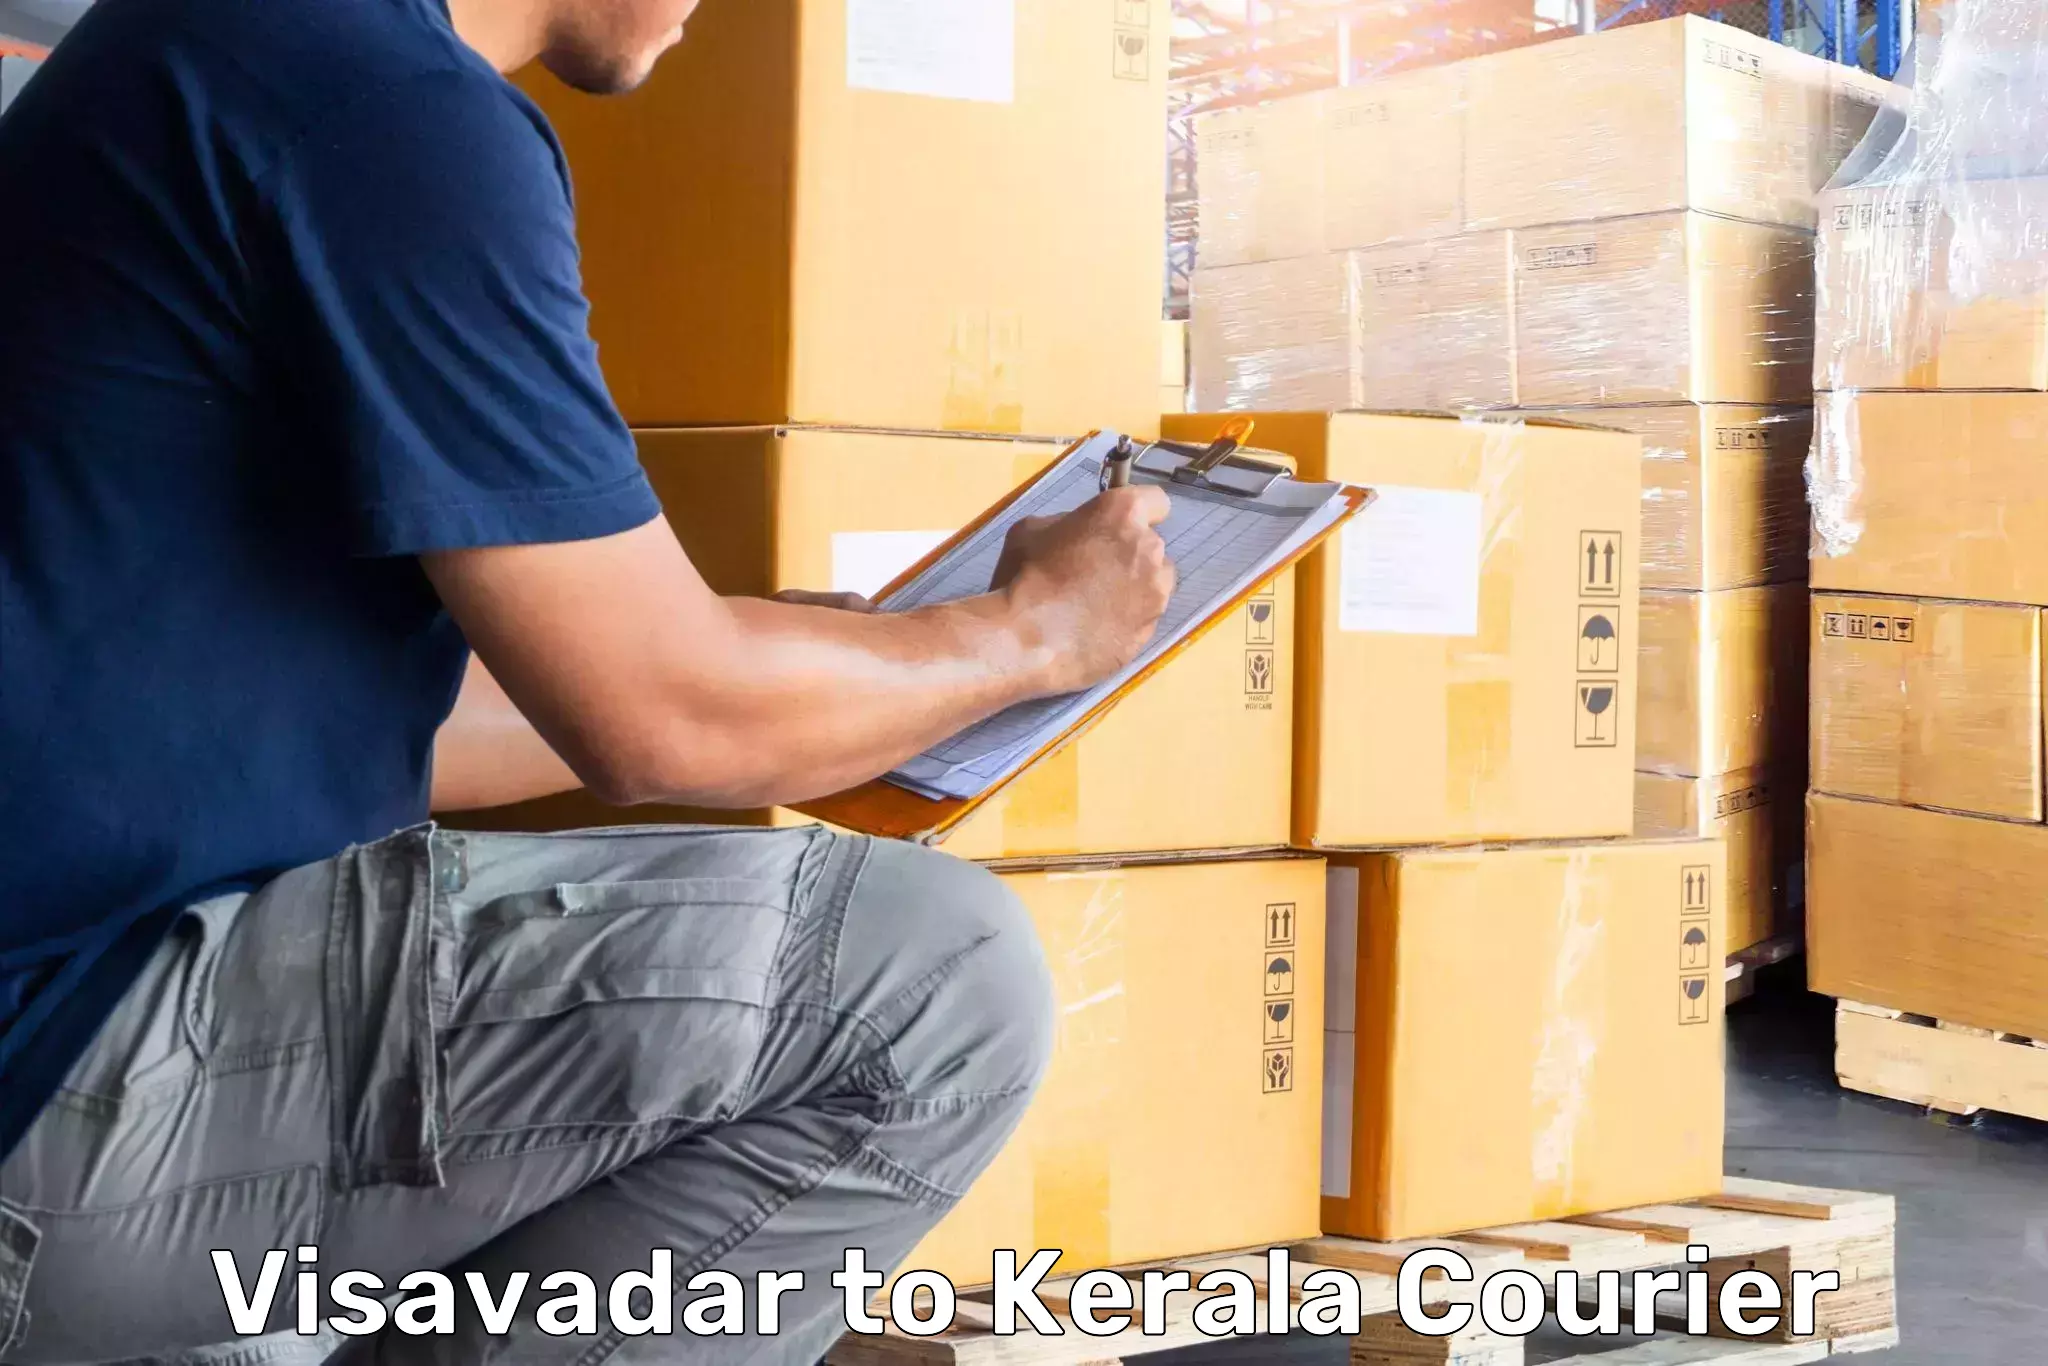 Luggage transport schedule Visavadar to Kalpetta